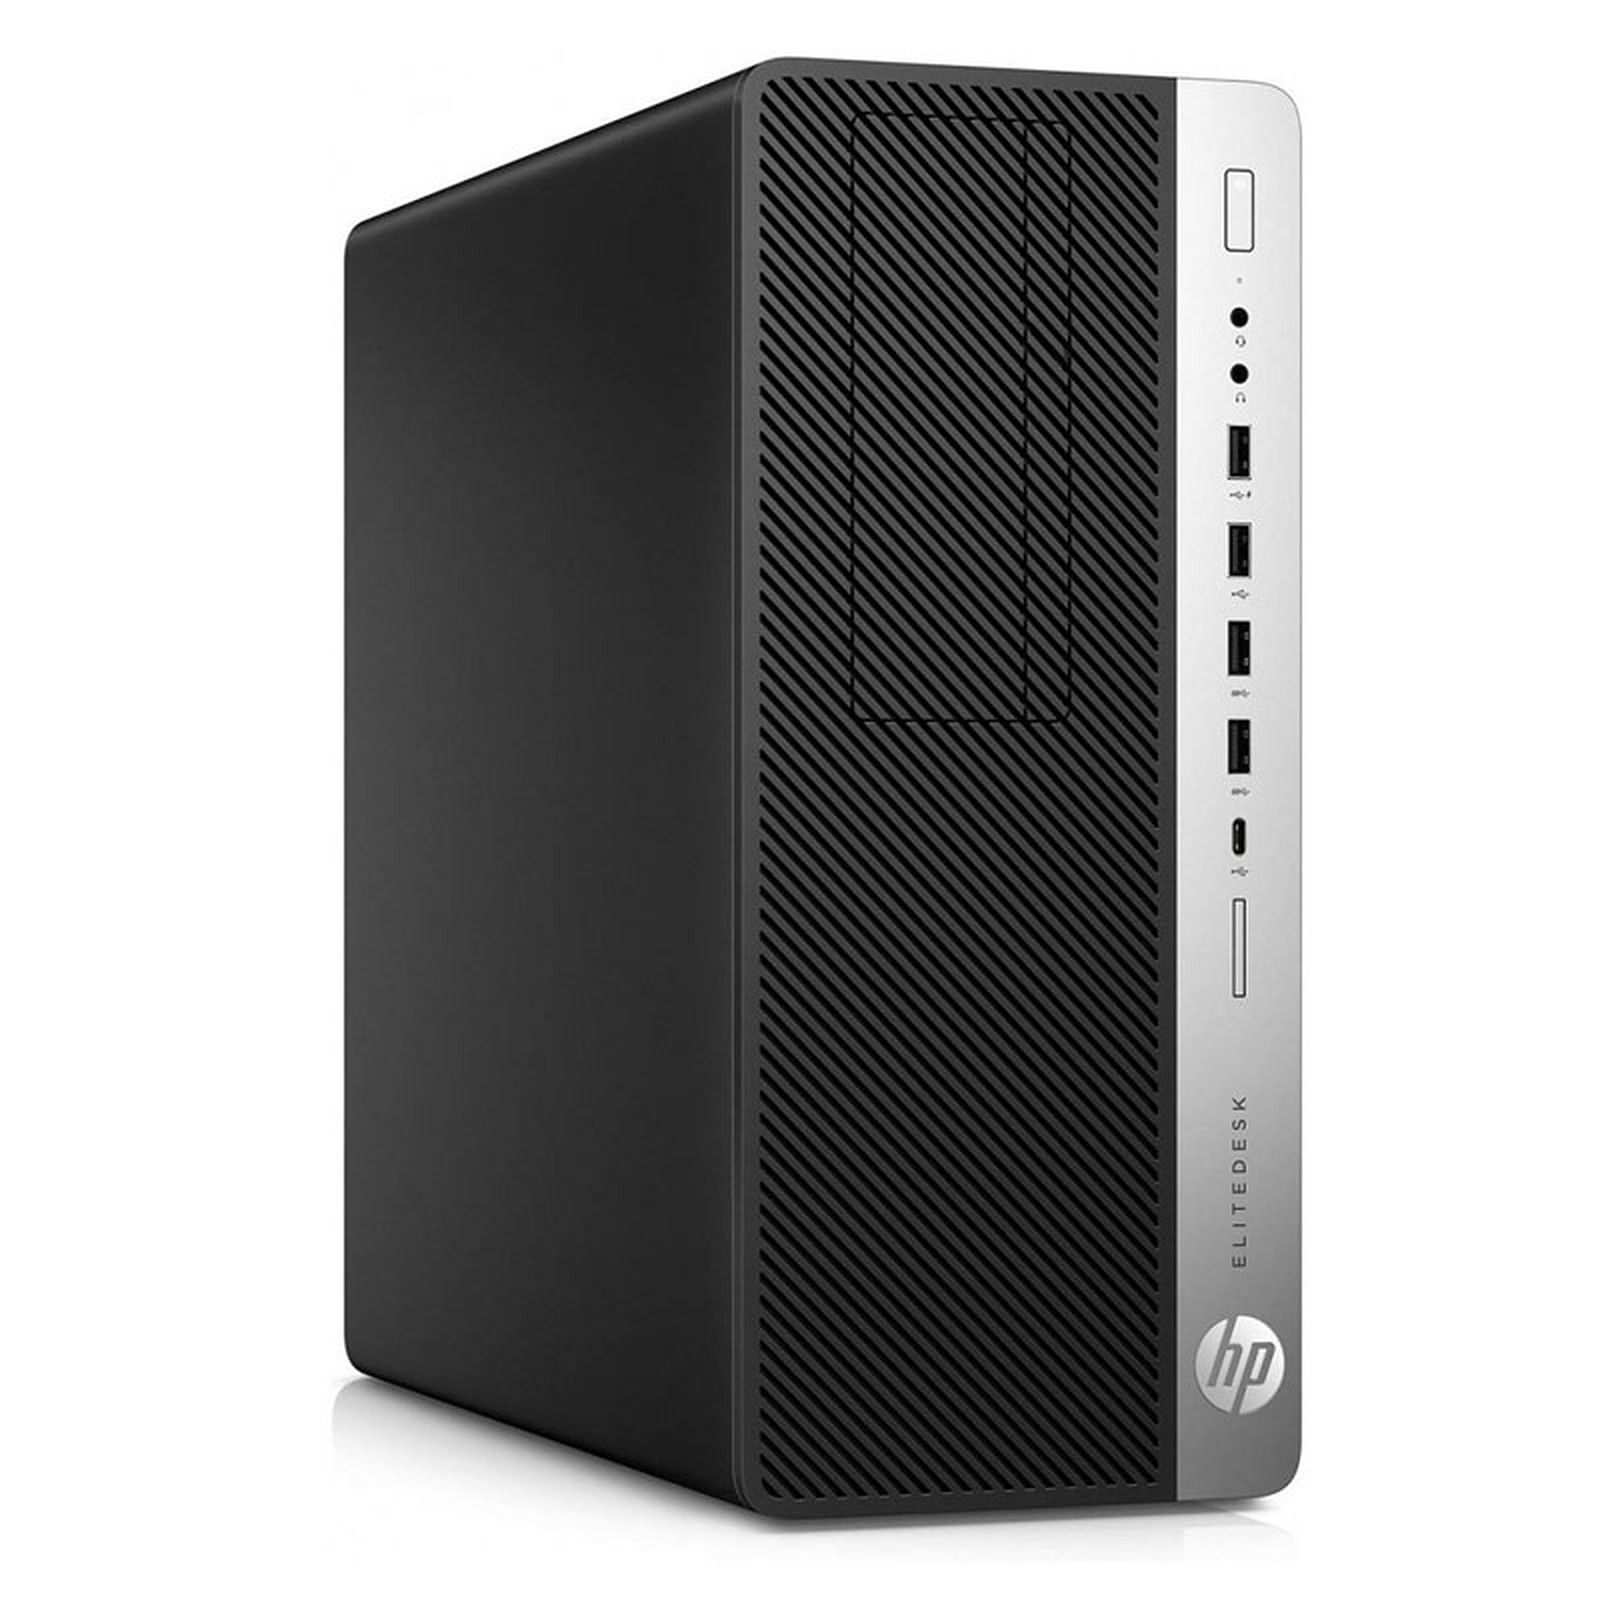 HP EliteDesk 800 G3 TWR (I56581) · Reconditionne - PC de bureau reconditionne HP